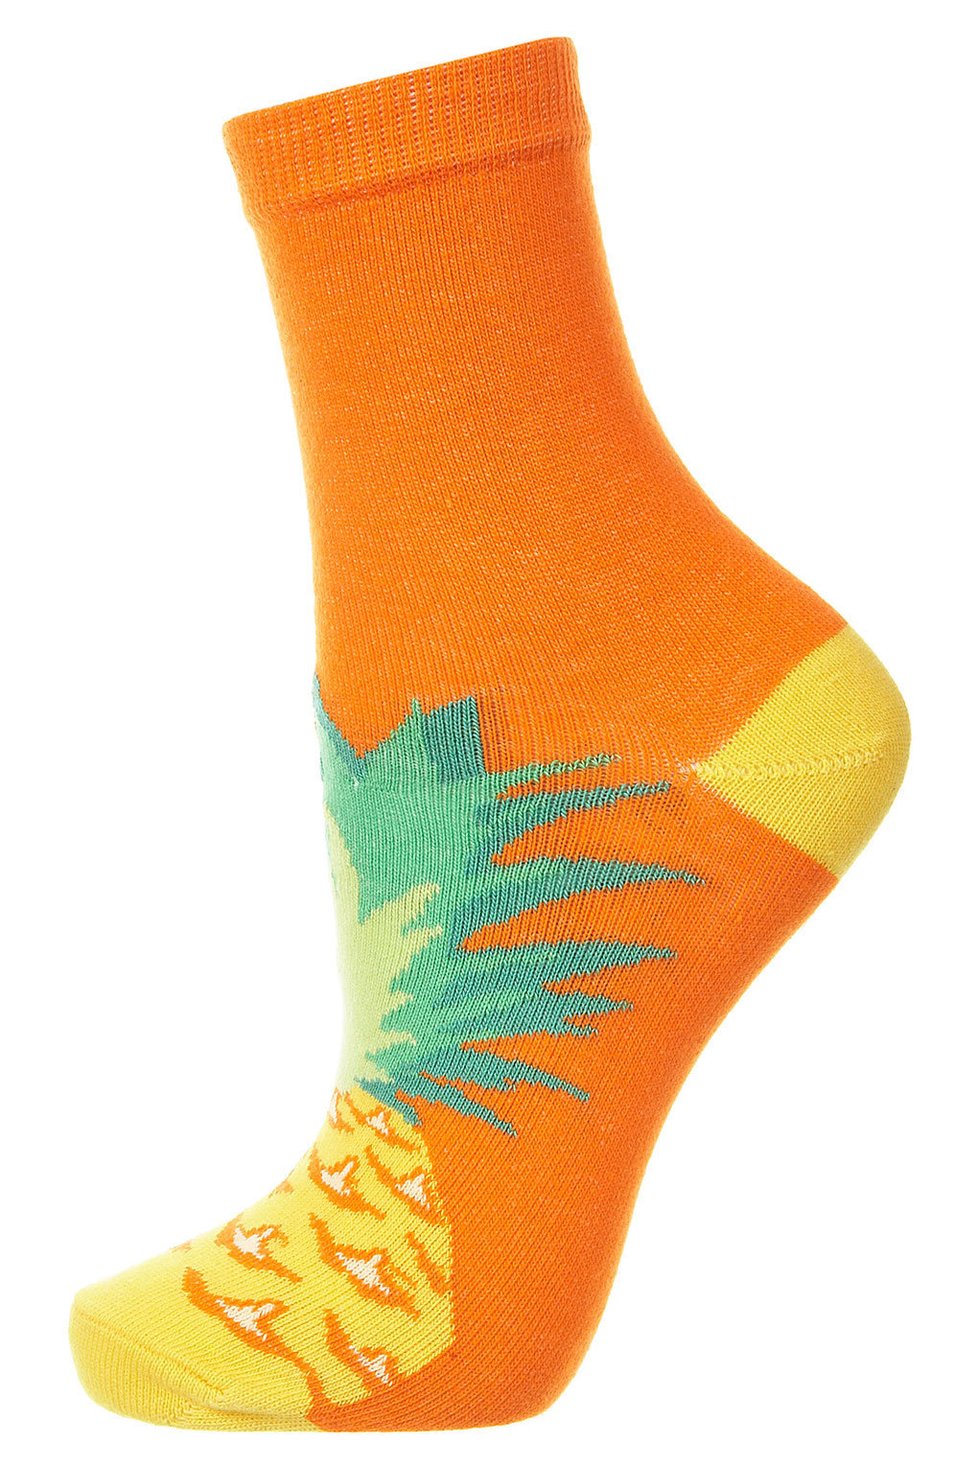 Ponožky s ananasem, topshop.com